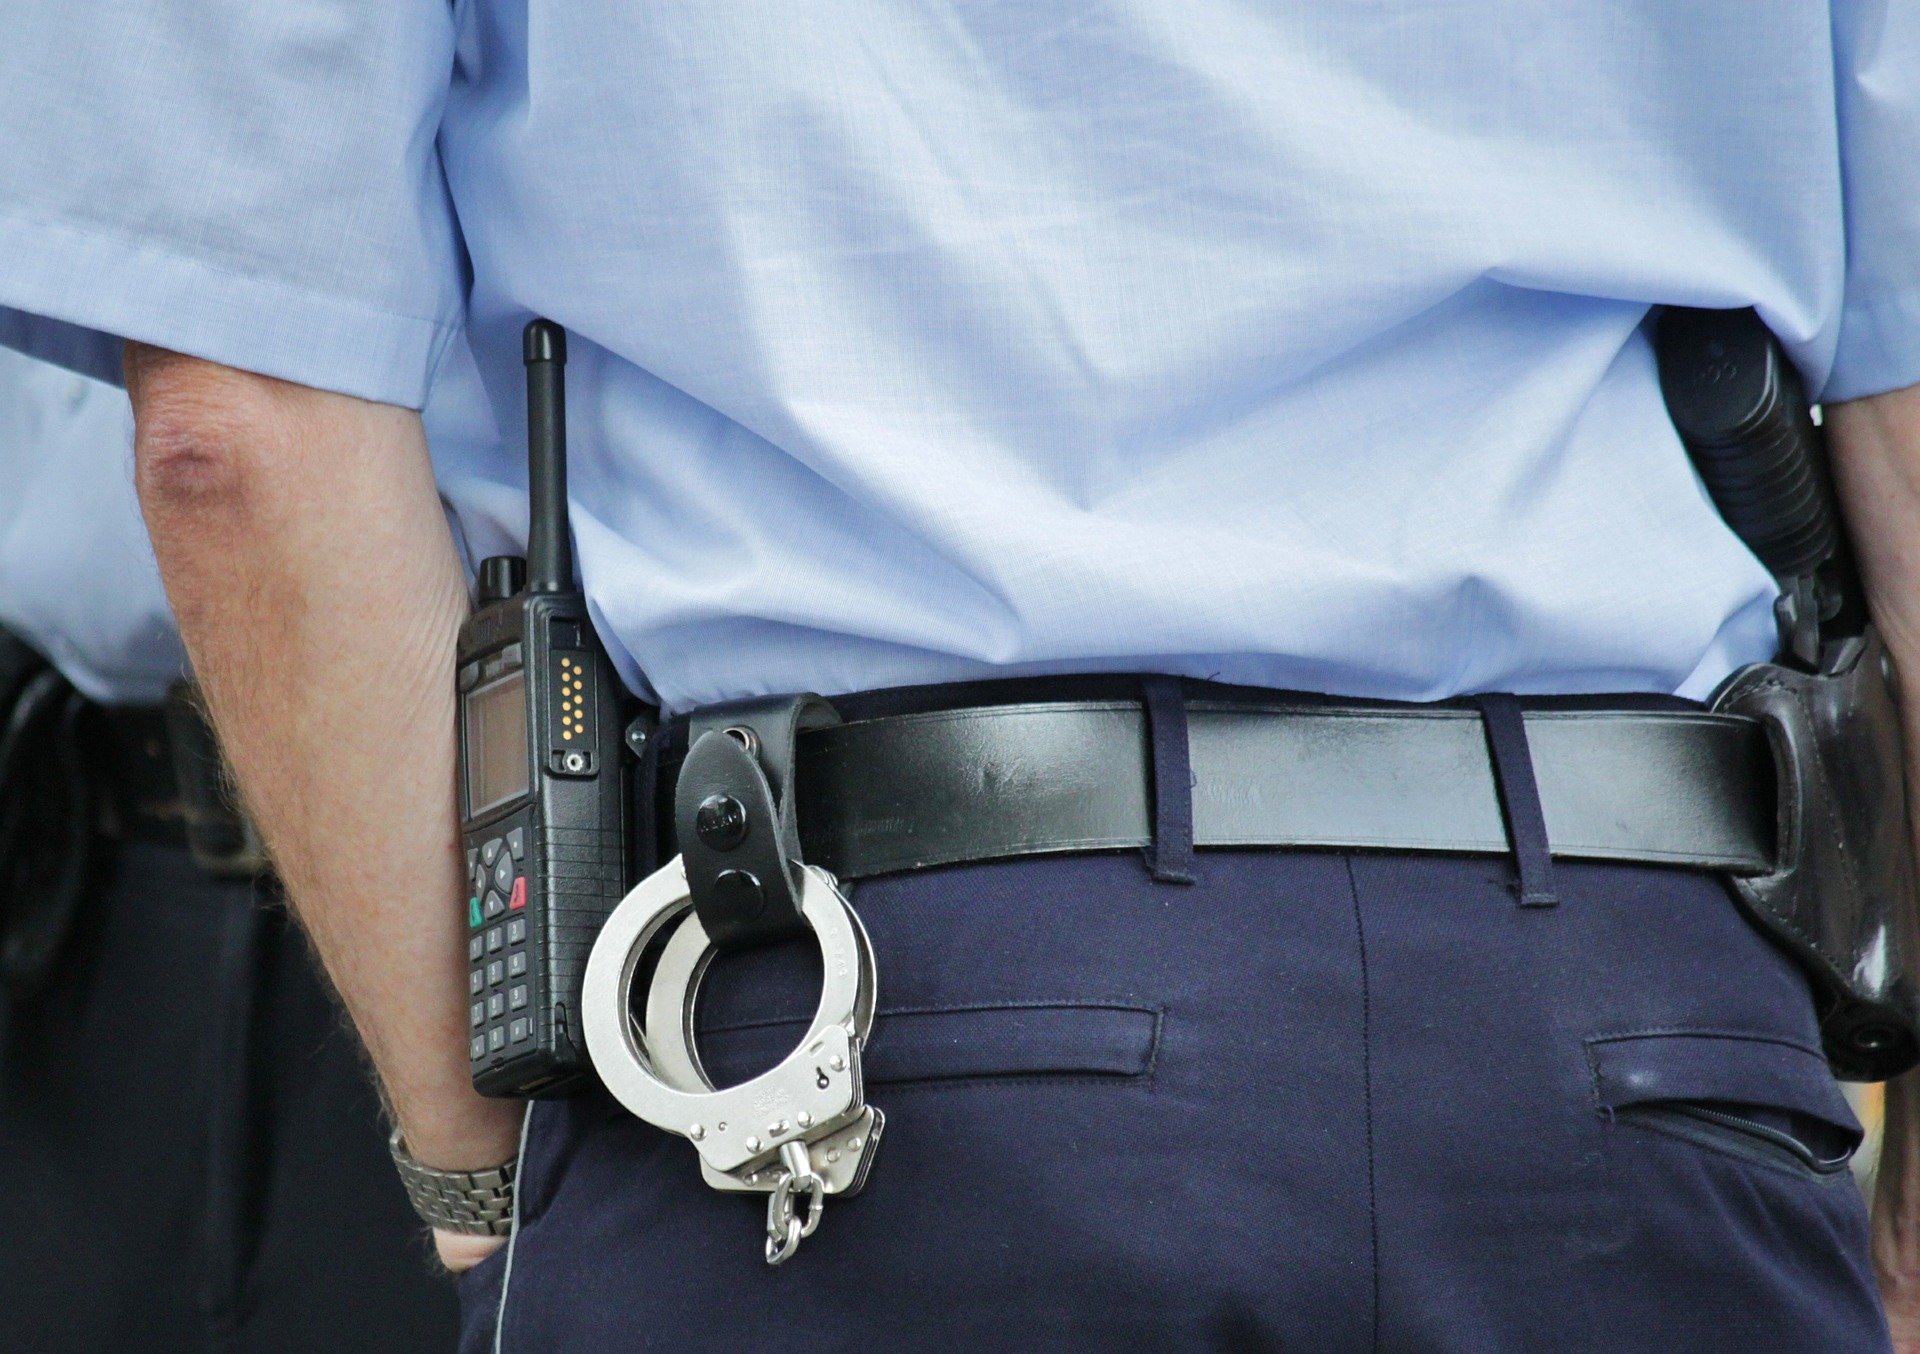 Polie et gendarmerie on t procédé à de nouvelles interpellations ce lundi. Image par Anja de Pixabay